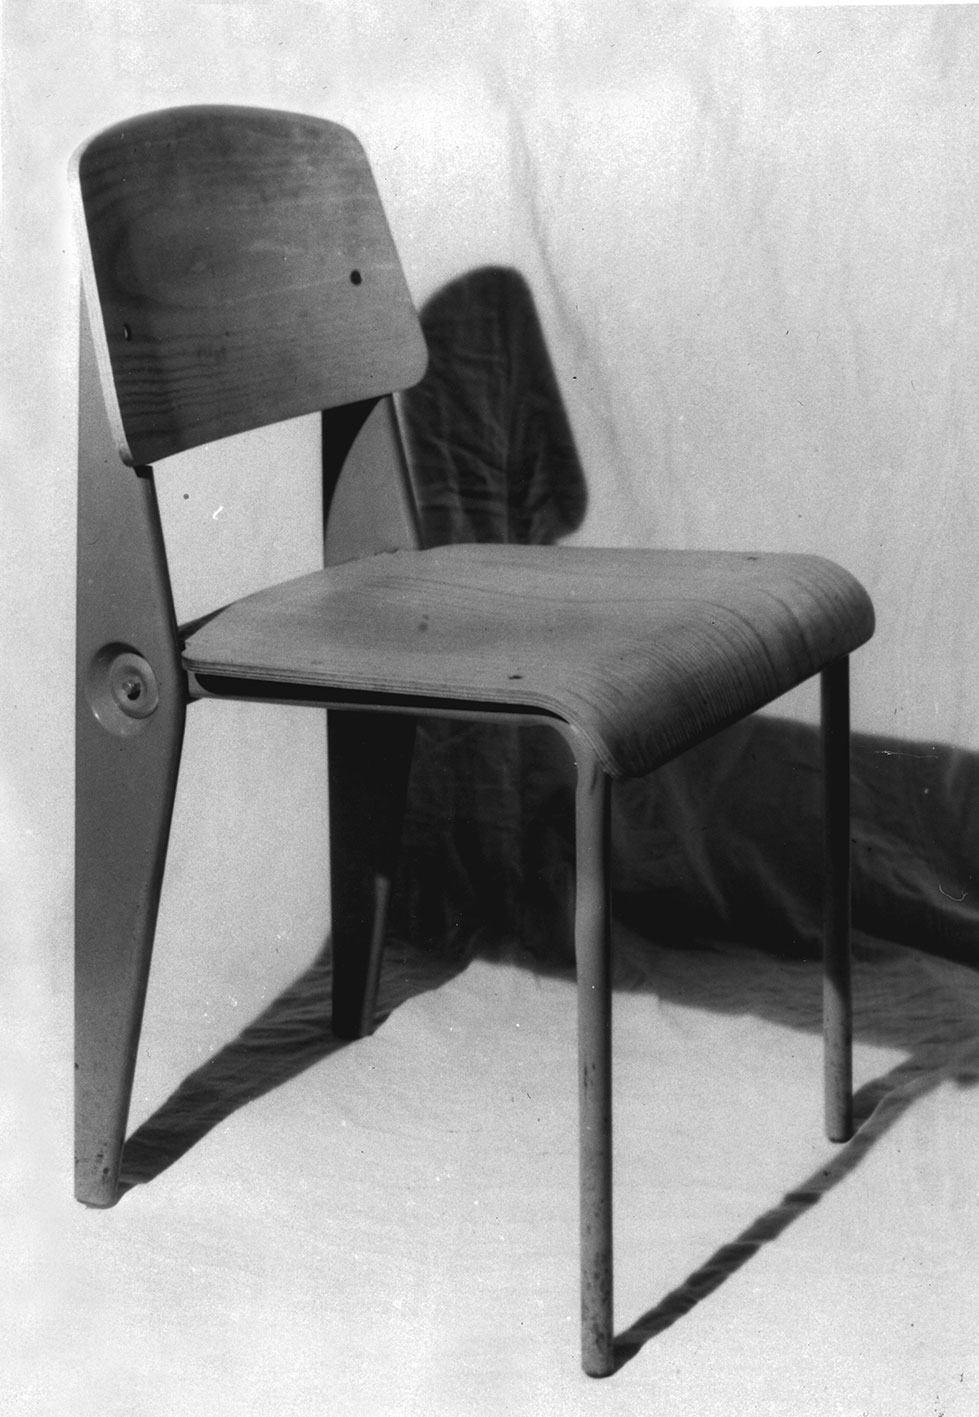 Cafétéria no. 300 chair. View in the workshop, 1950.